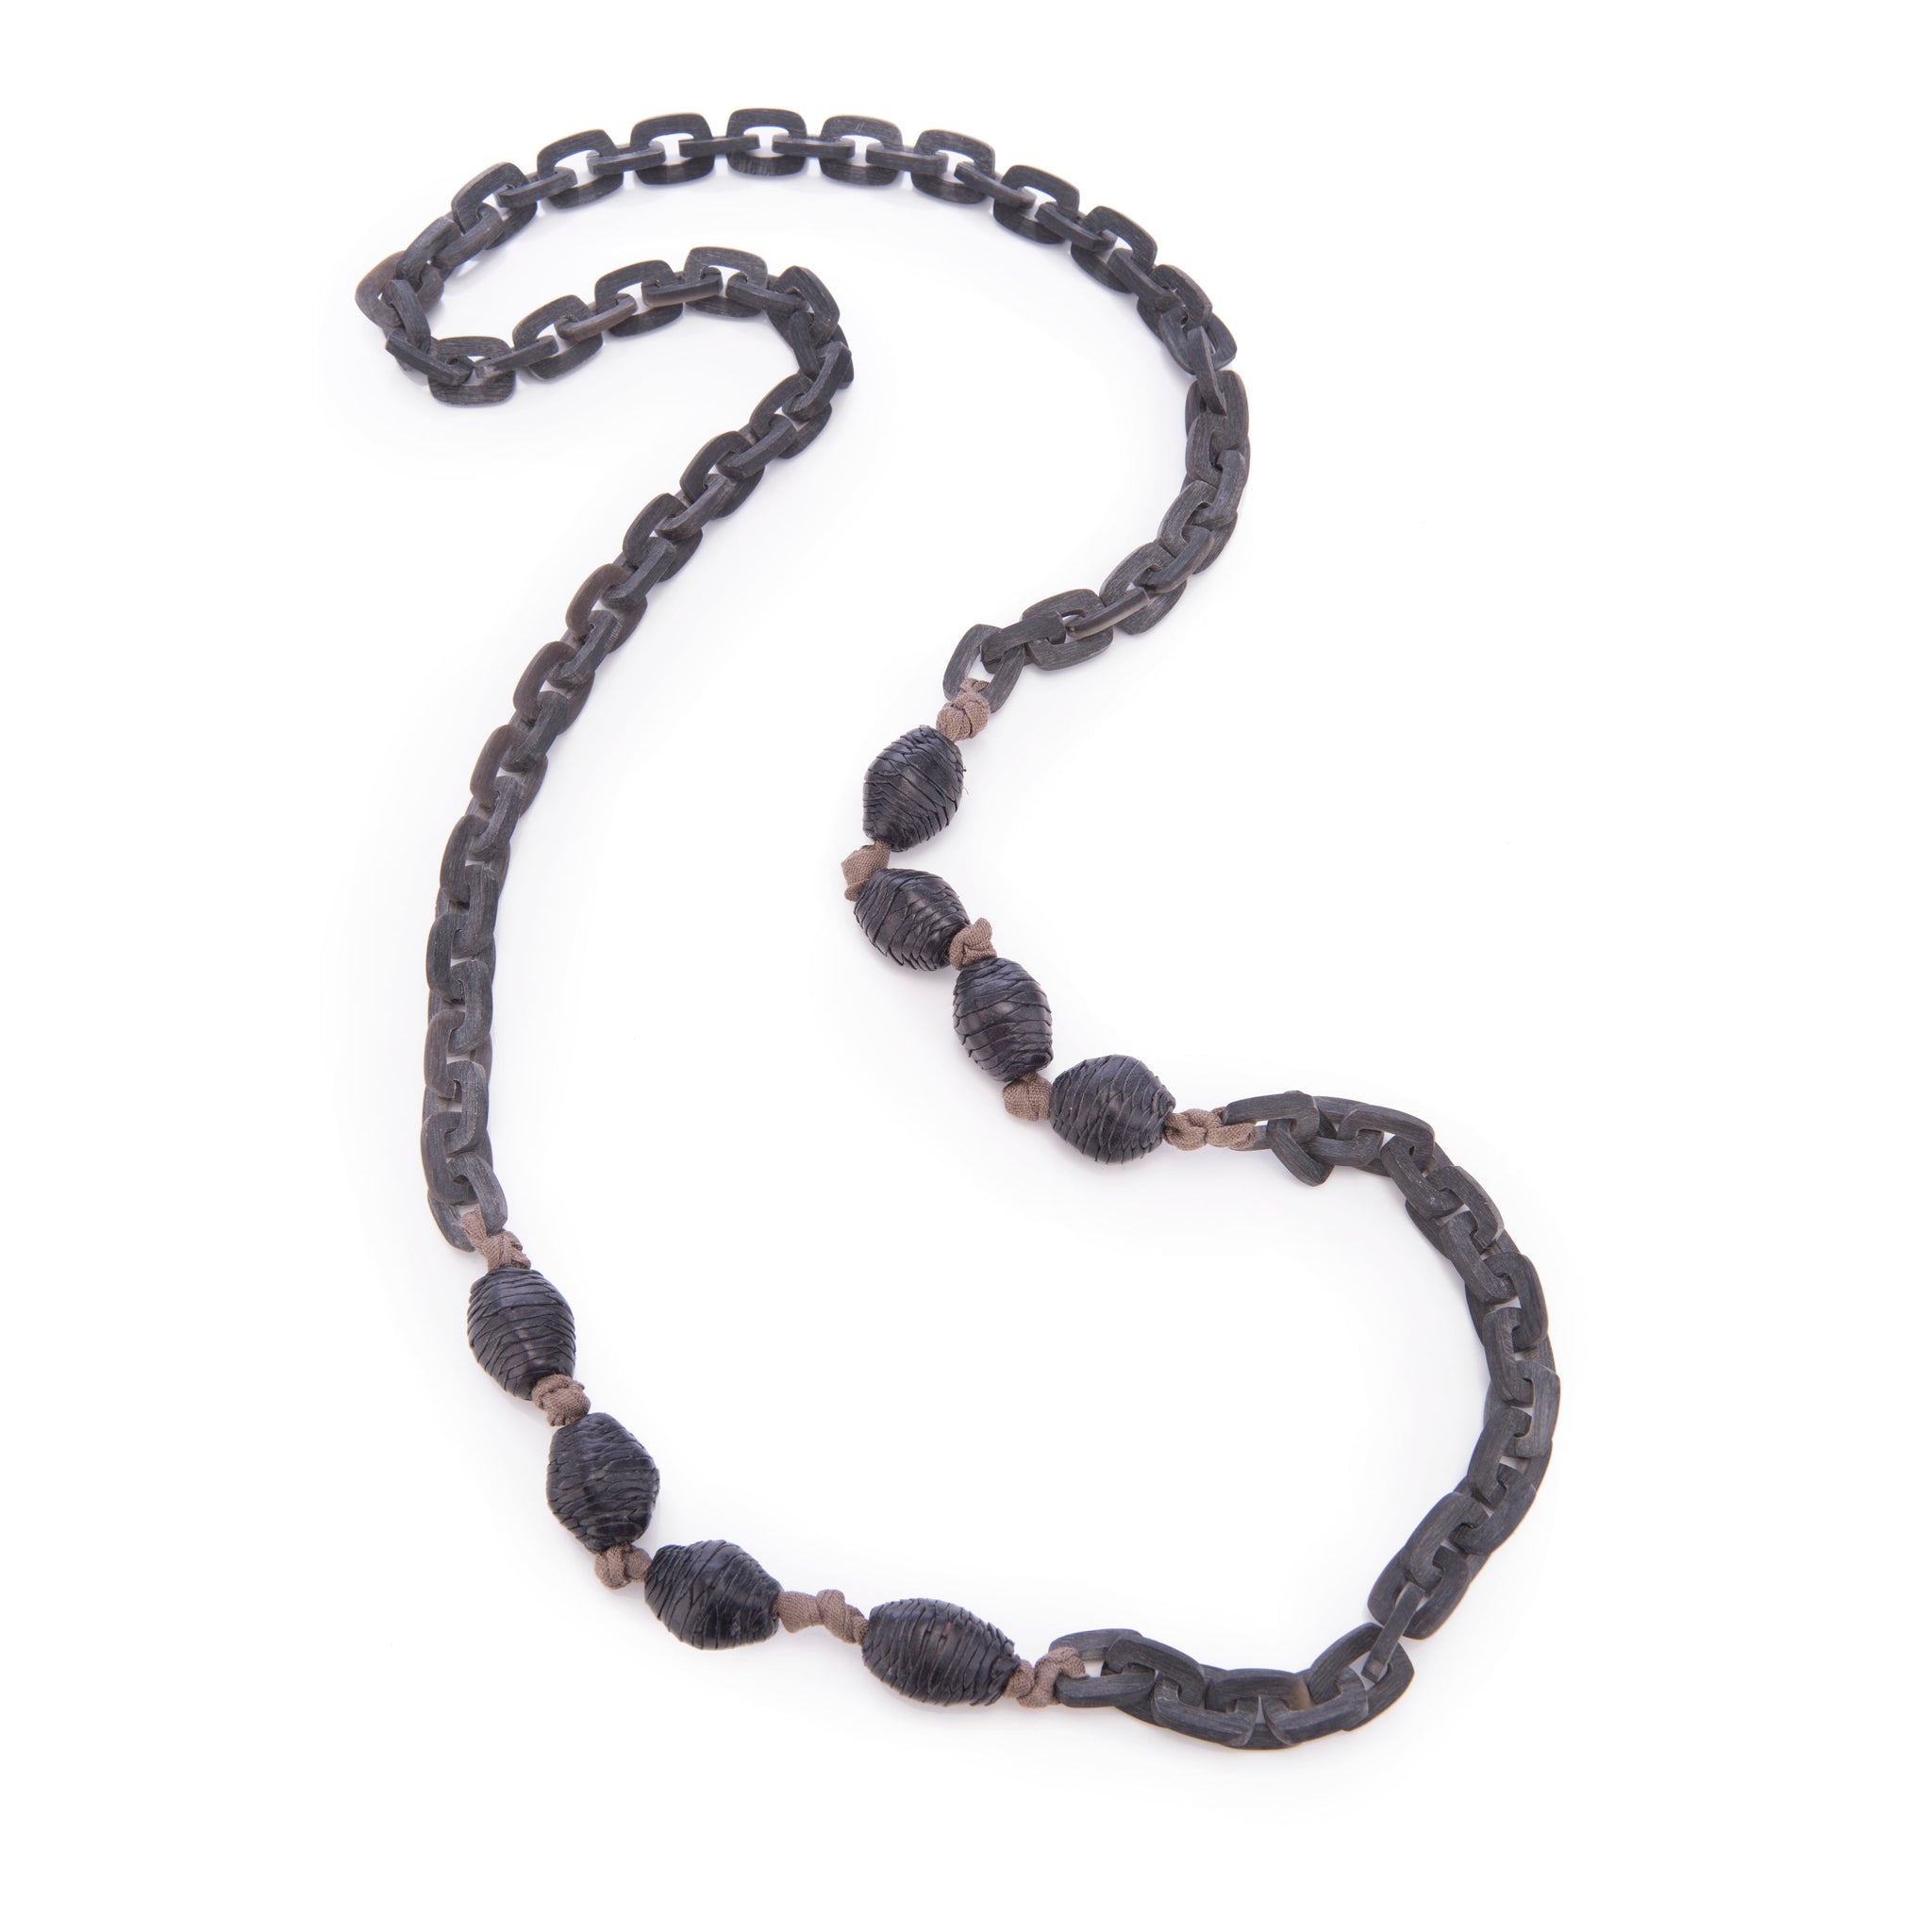 Matt Gray Horn Links Leather Beads